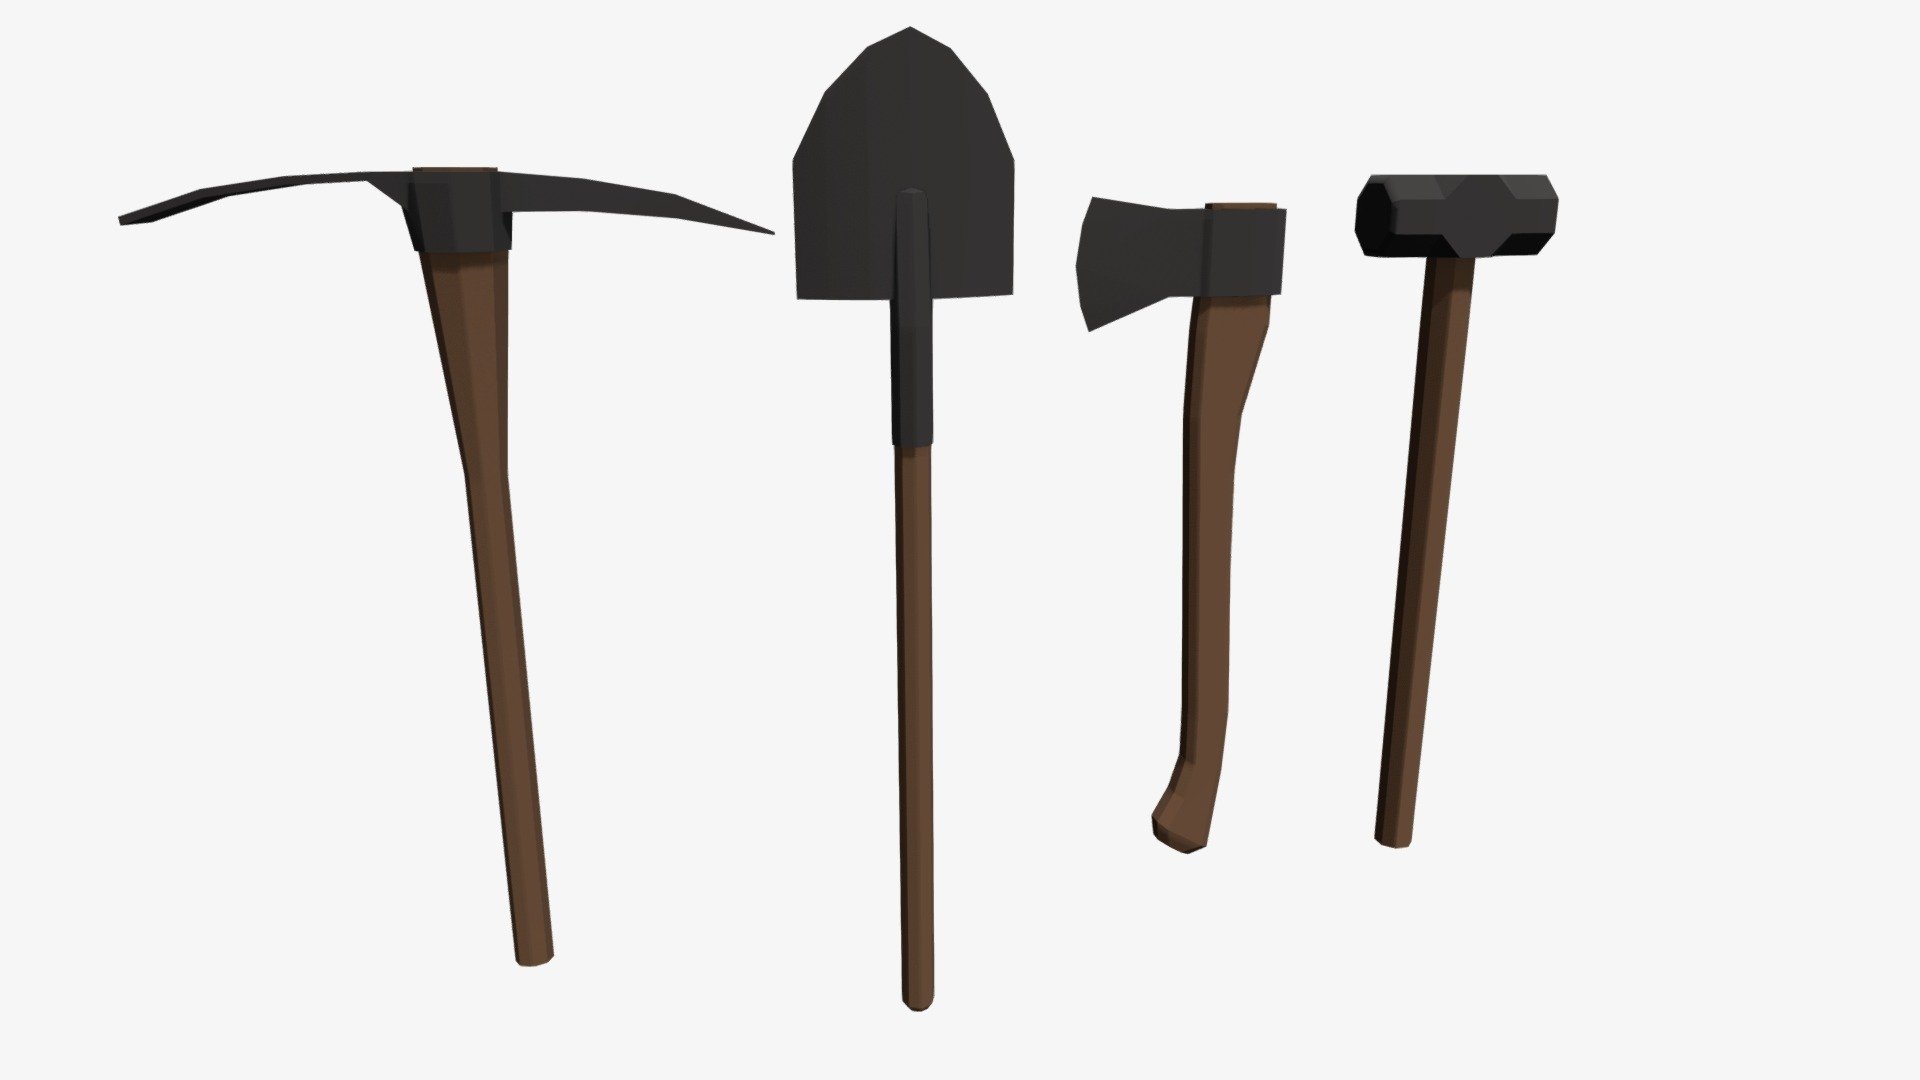 A Pickaxe, Shovel, Axe, and a Sledgehammer 3d model